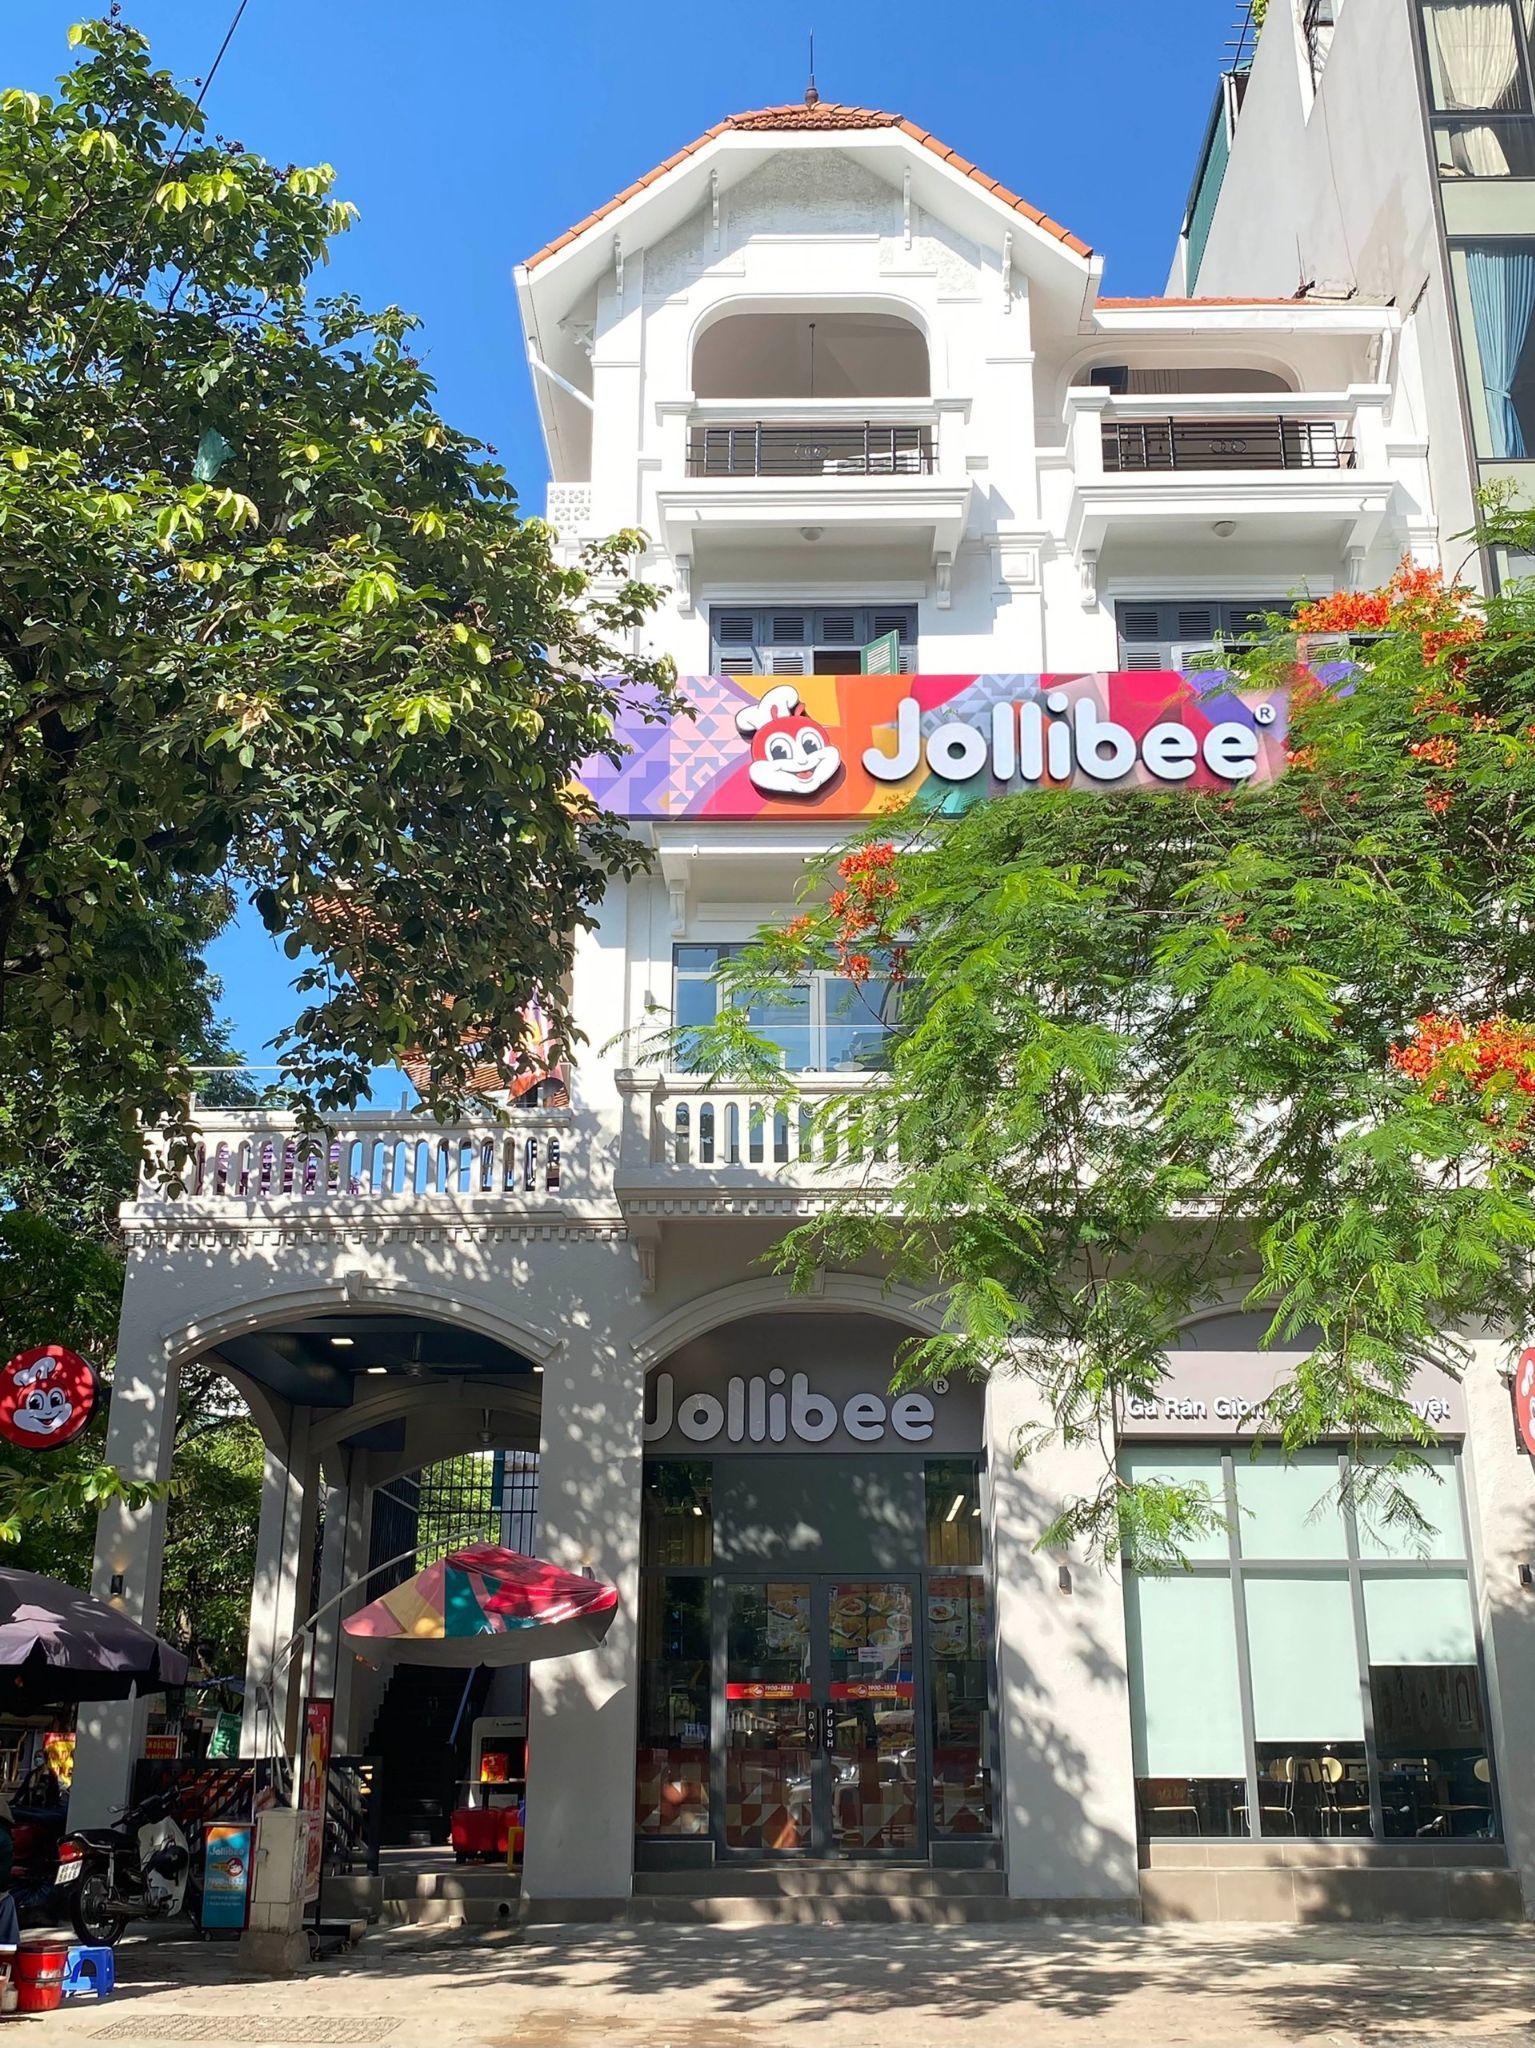 Khám phá bí mật khiến cửa hàng thứ 6 của Jollibee tại Hà Nội trở nên siêu hot trong ngày khai trương - Ảnh 1.